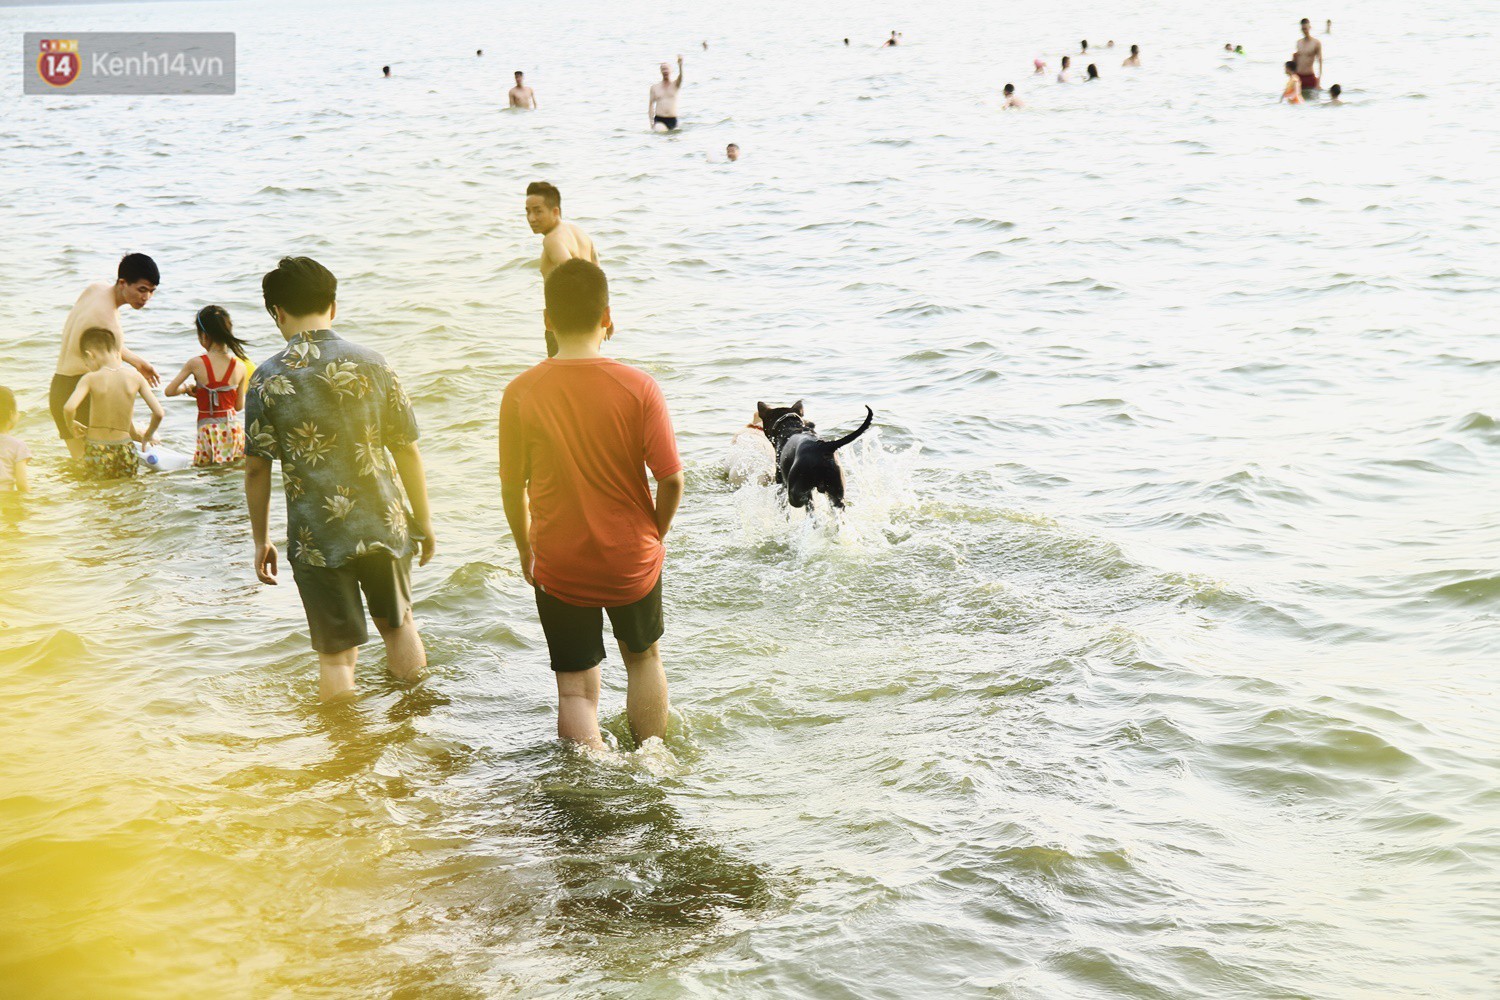 Nắng nóng oi bức, người dân Thủ đô bế chó cưng ra Hồ Tây cùng tắm để giải nhiệt dù có biển cấm 14